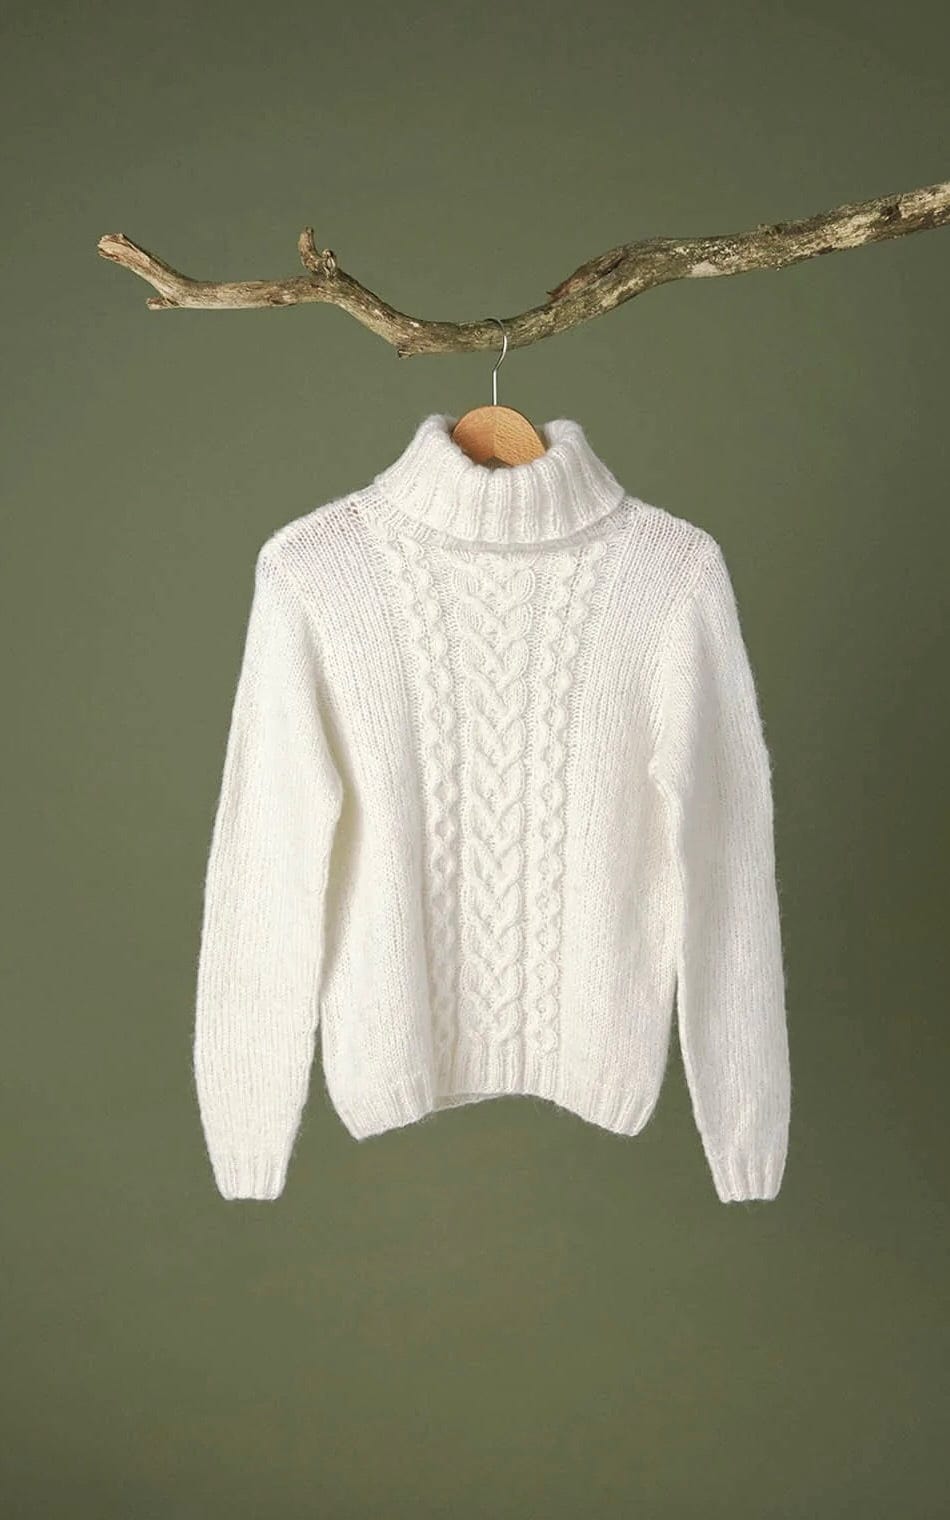 Pullover mit Zöpfen - KOS - Strickset von SANDNES jetzt online kaufen bei OONIQUE